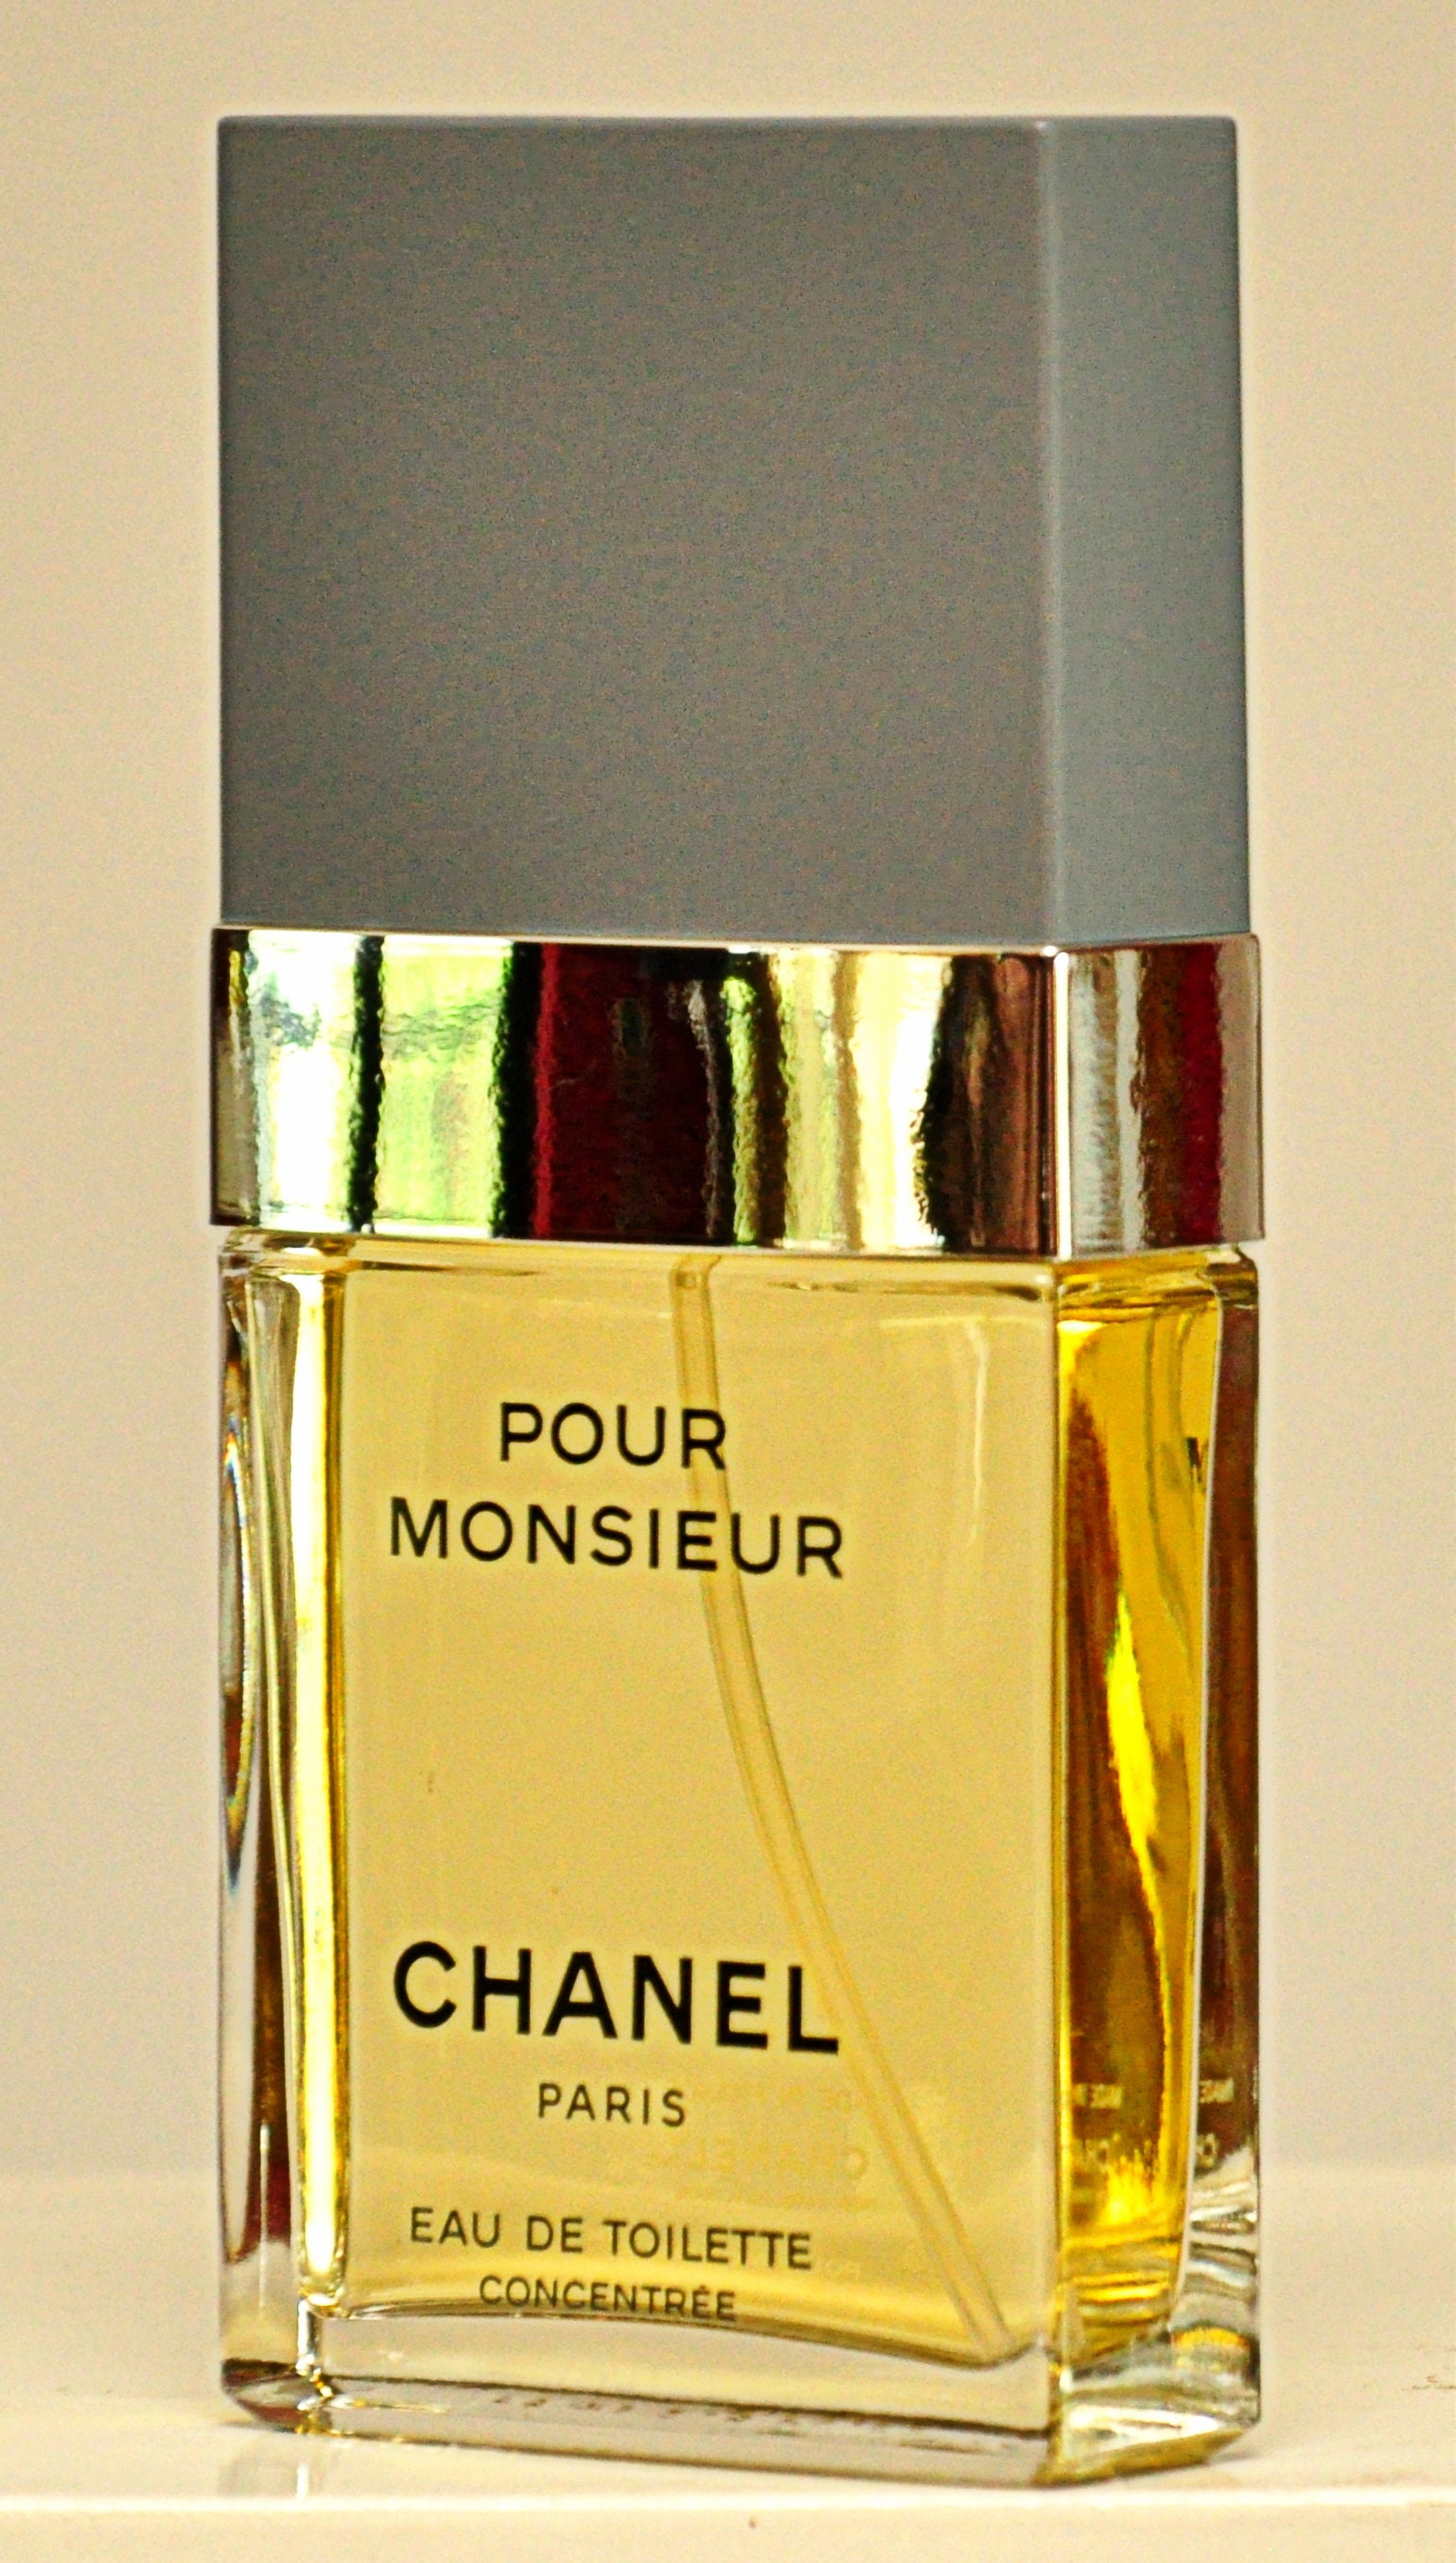 Chanel Pour Monsieur Eau De Toilette Concentree Edt 75ml 2.5 